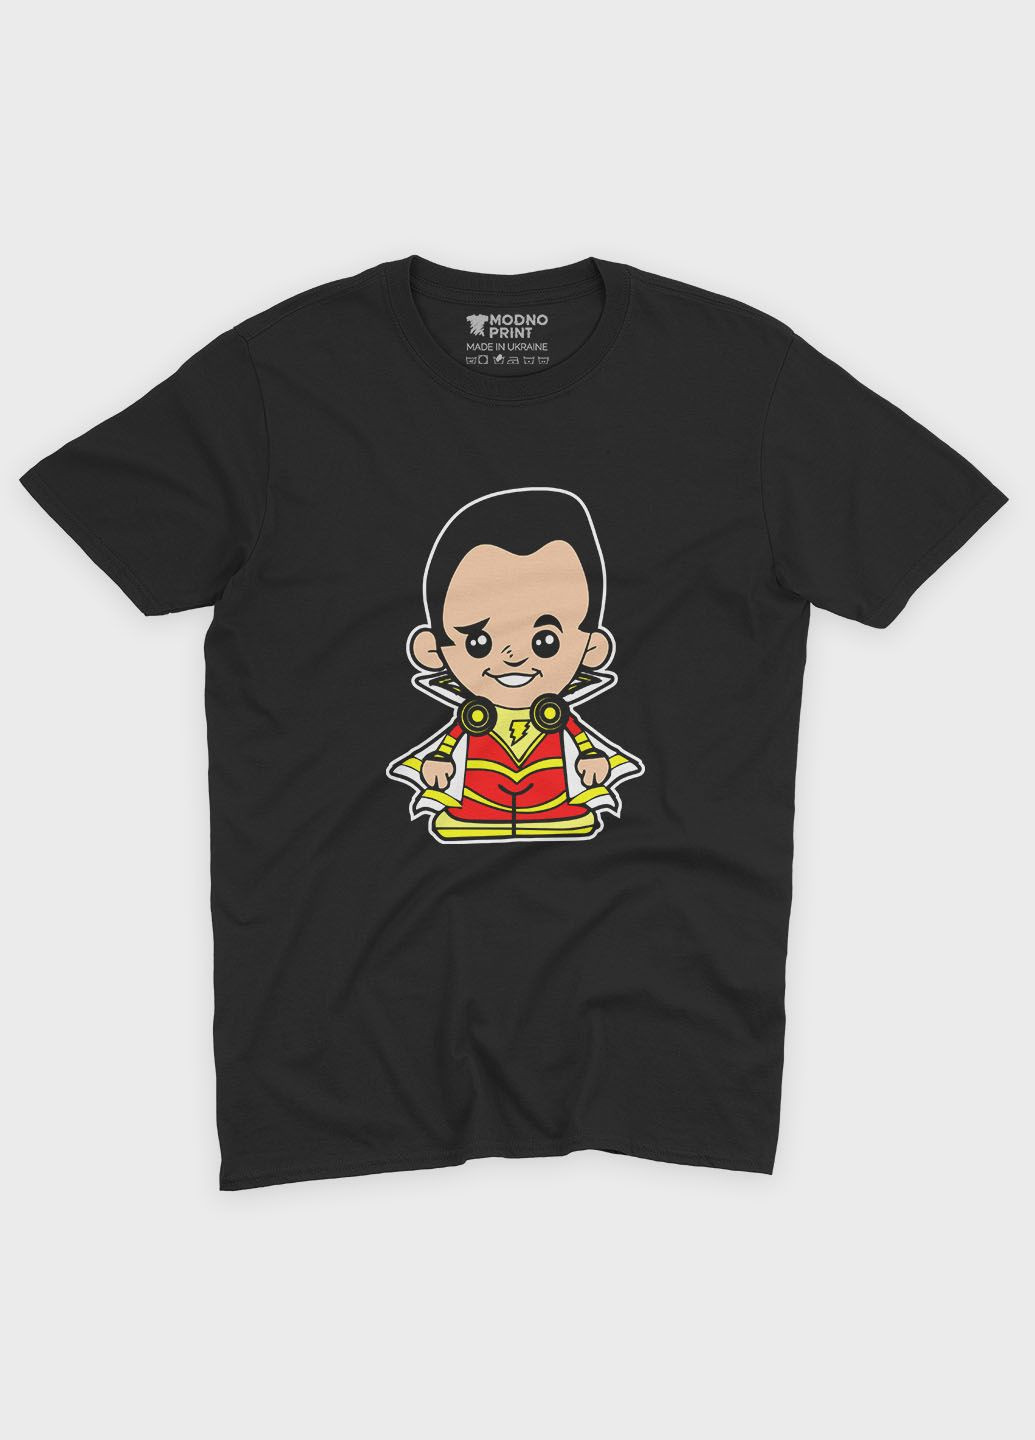 Чорна демісезонна футболка для хлопчика з принтом супергероя - шазам (ts001-1-bl-006-012-002-b) Modno